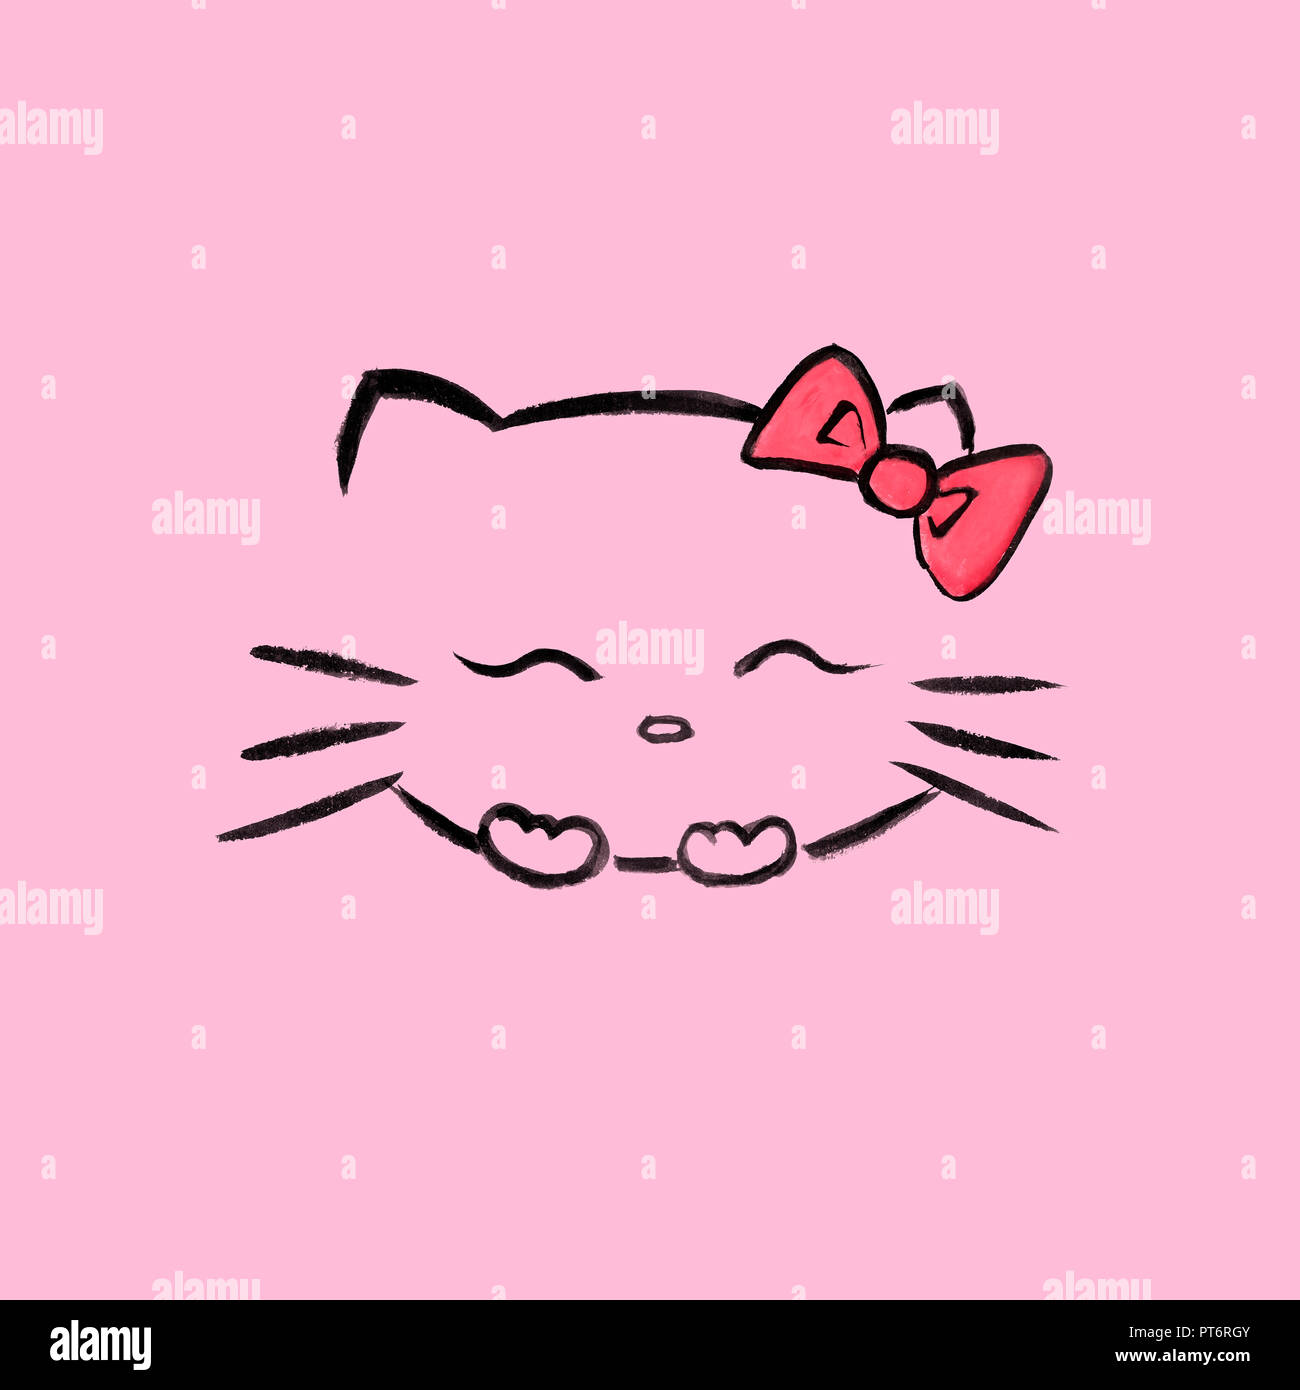 Lindo, Hello Kitty sonriente con un lazo rojo, personaje de dibujos animados japoneses kawaii inspirado sumi-e ilustración. Aislado sobre fondo de color rosa. Foto de stock